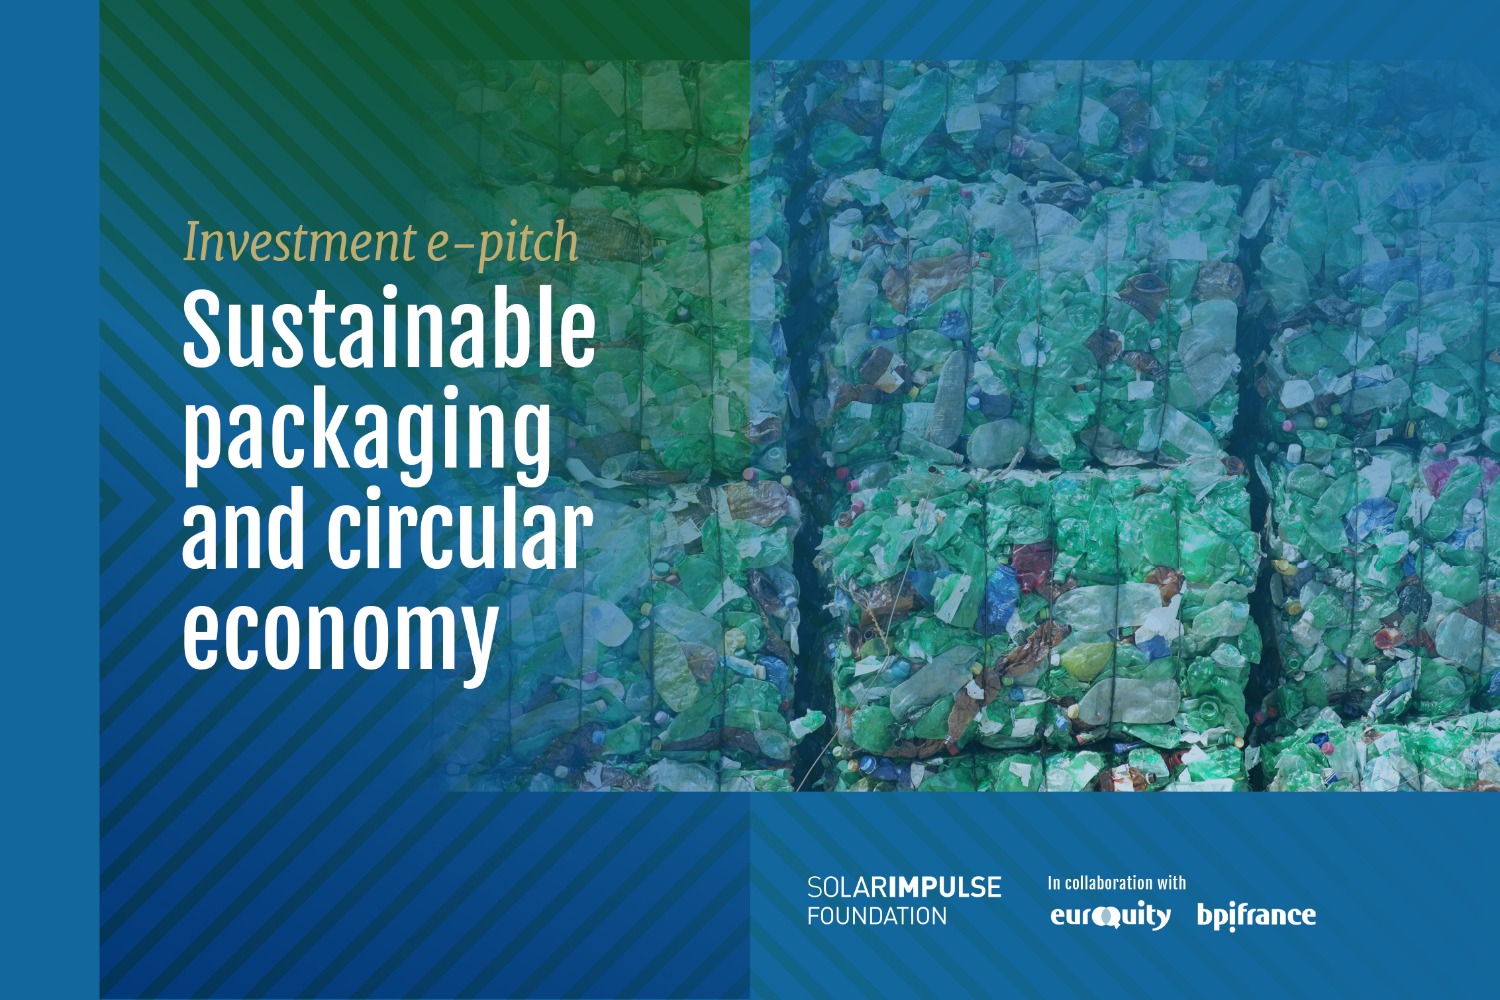 E-Pitch Solar Impulse Investment - "Nachhaltige Verpackungen und Kreislaufwirtschaft". 